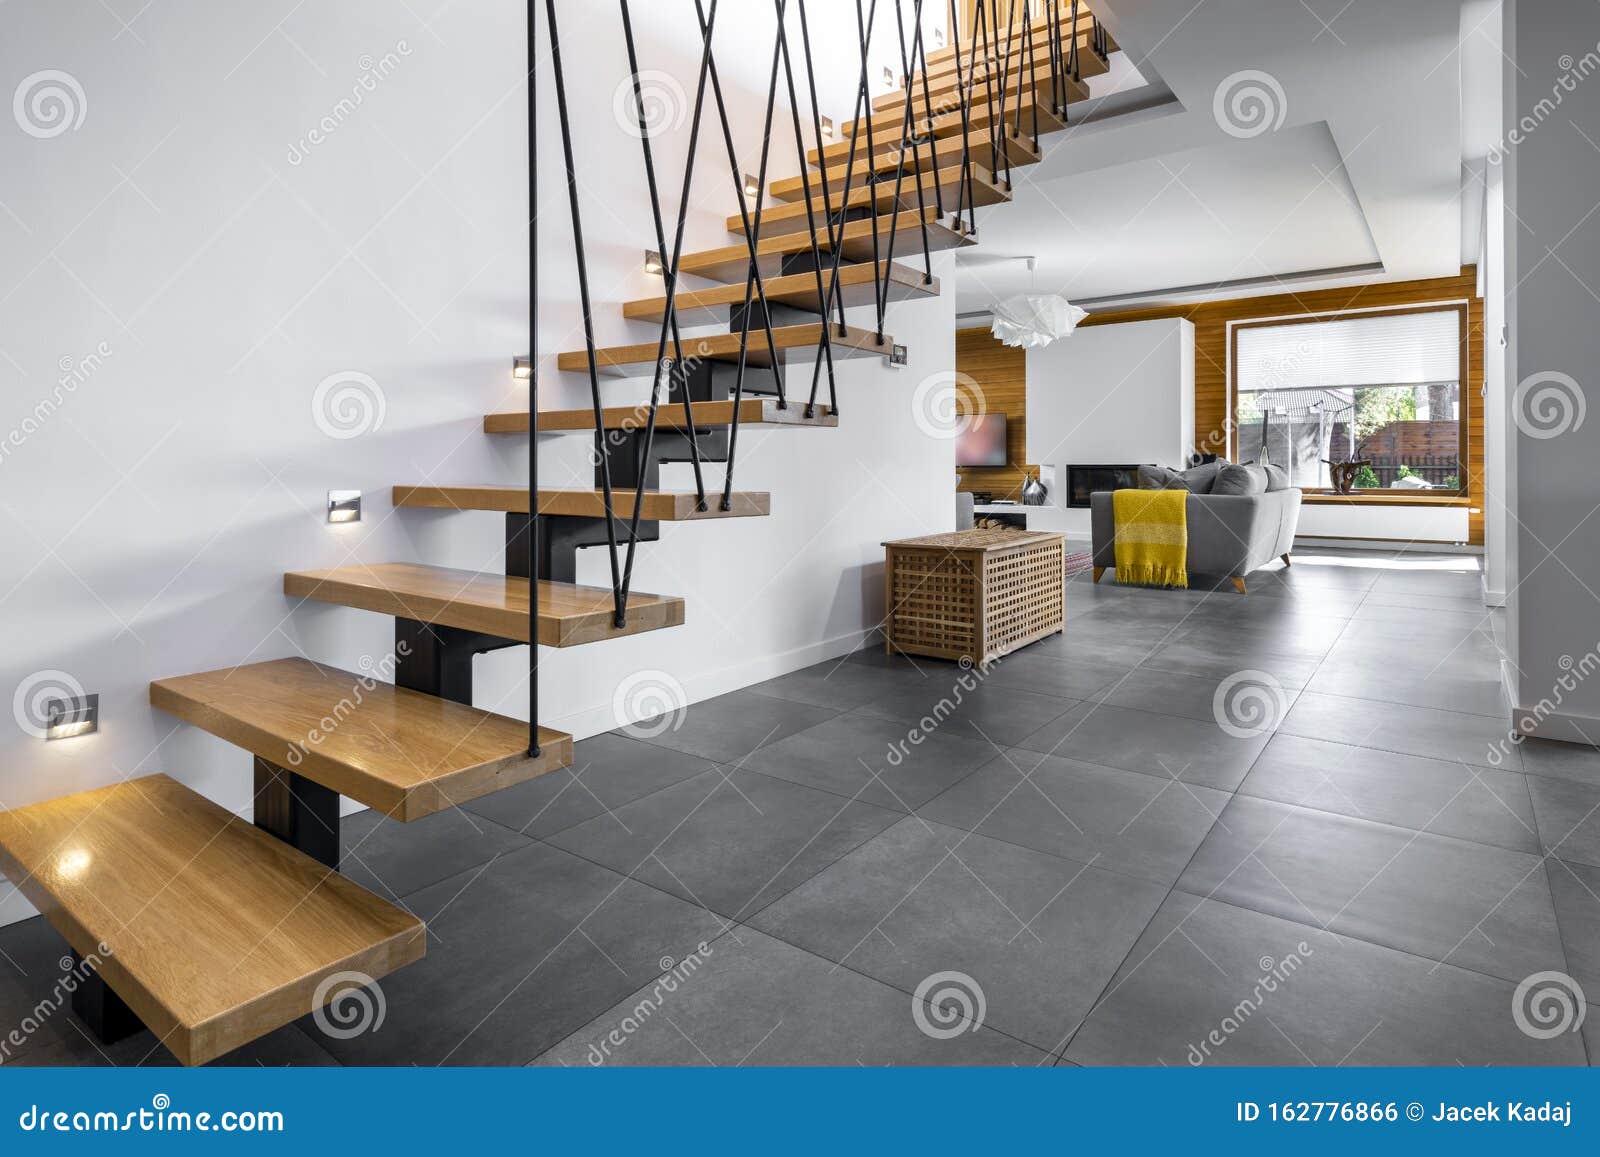 modern interior  - stairs